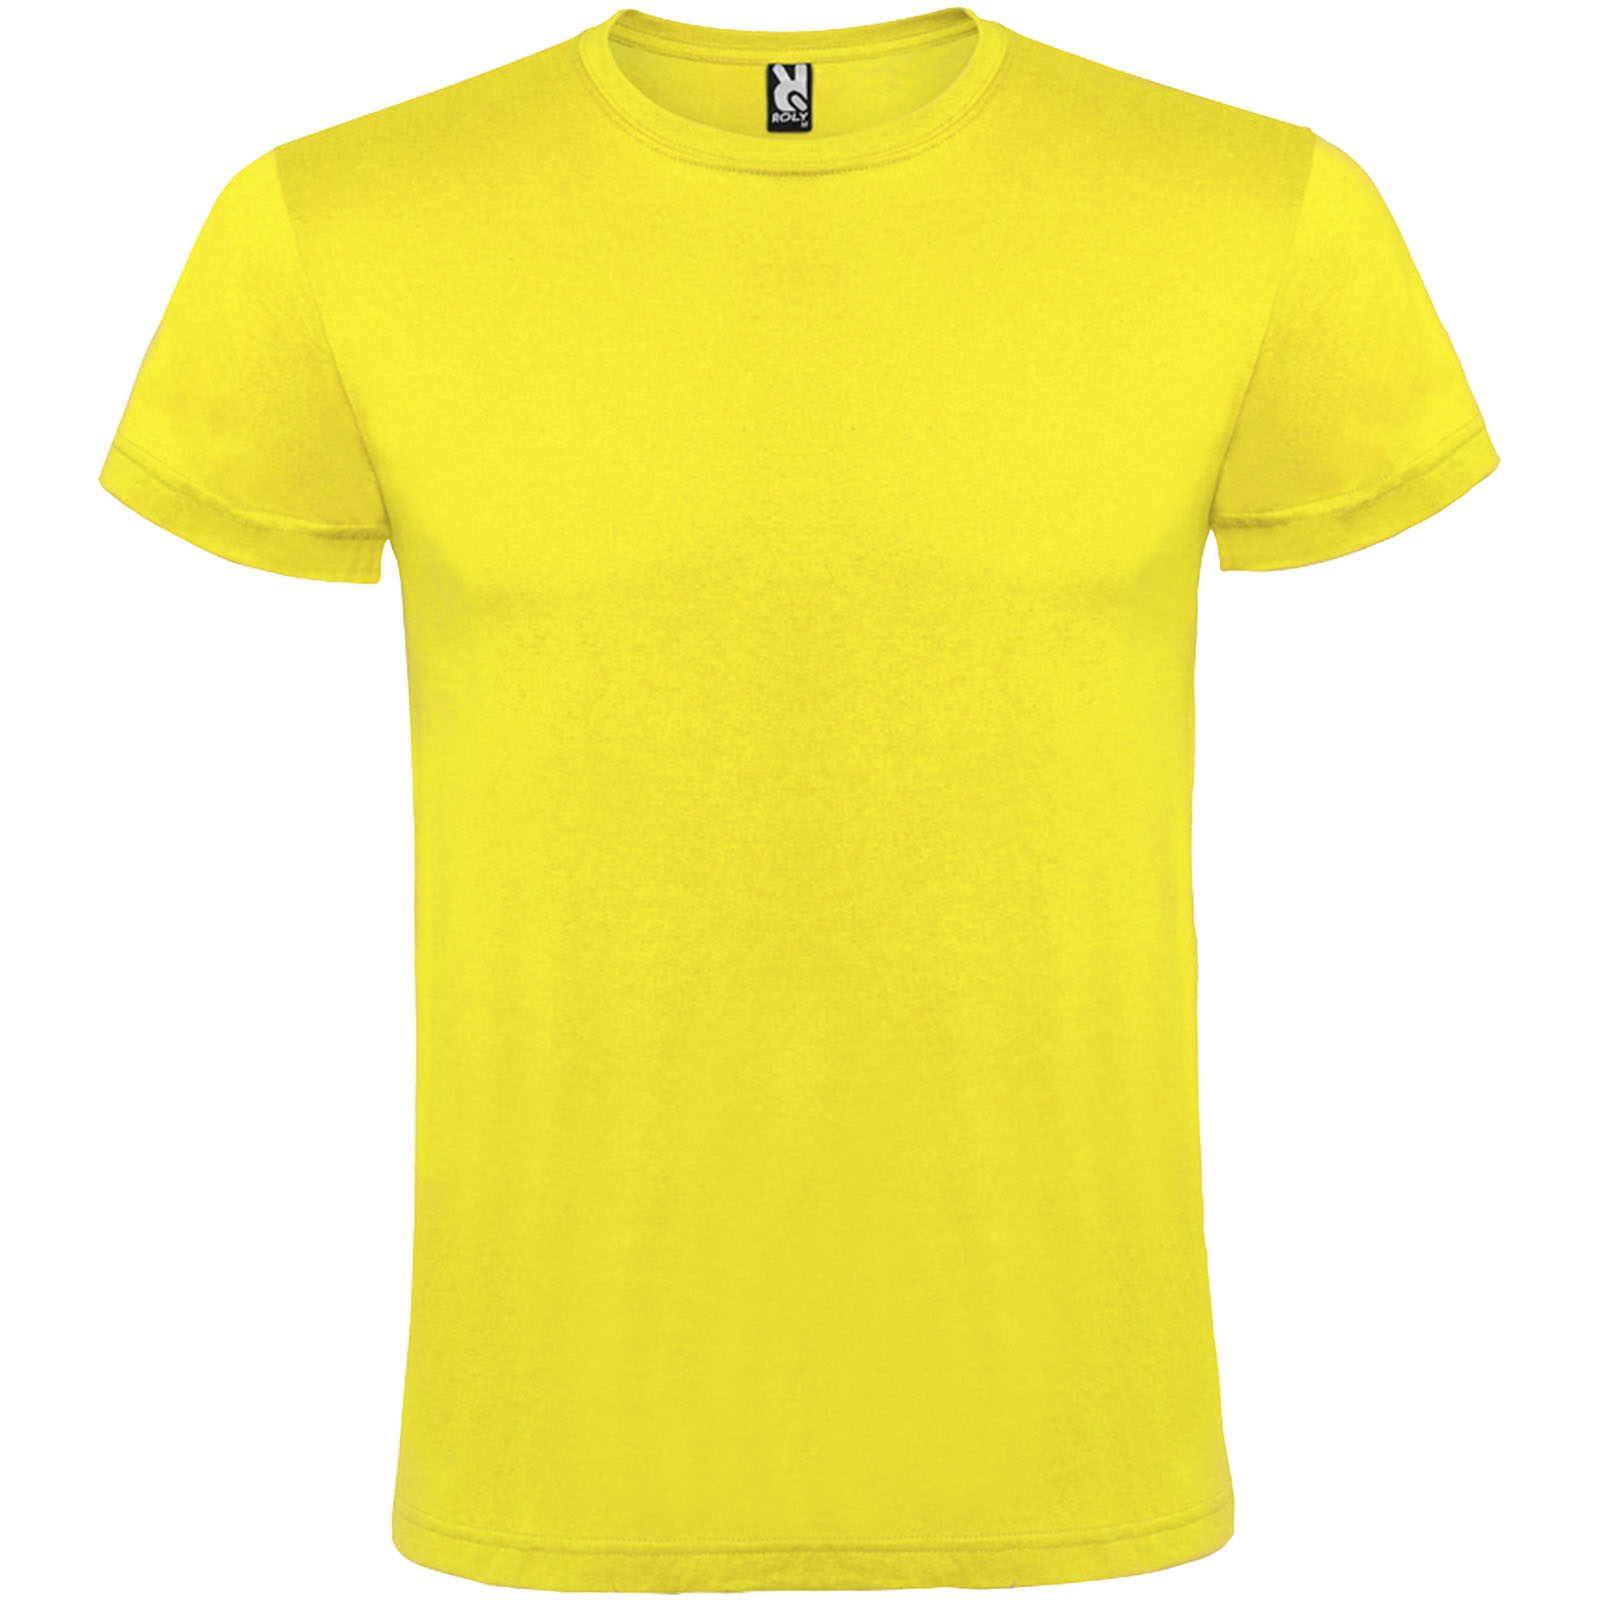 Clothing - Atomic short sleeve unisex t-shirt